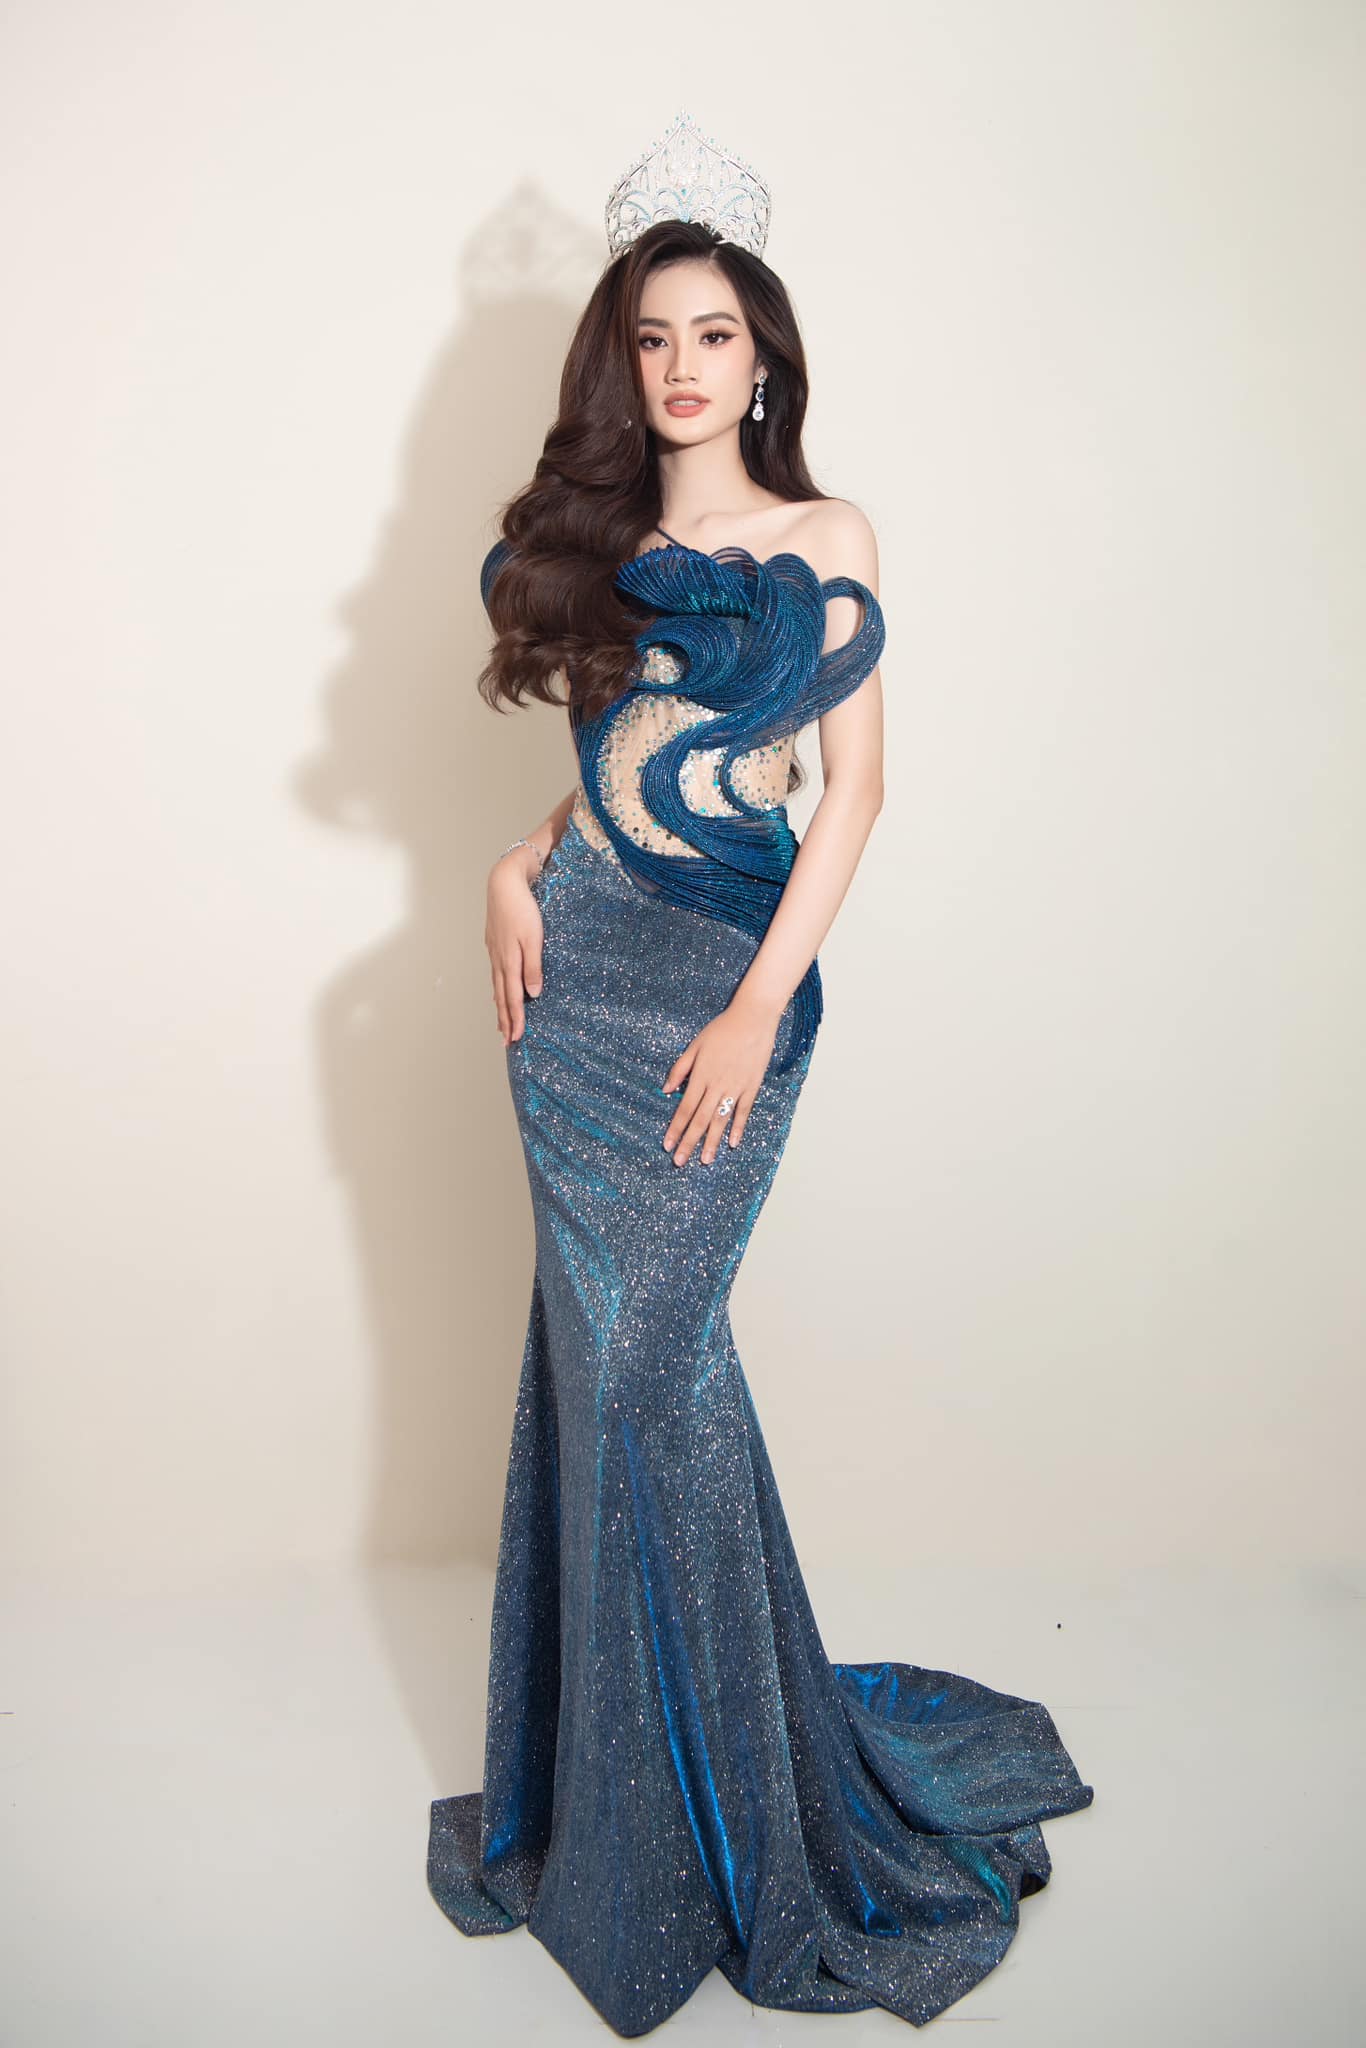 Liên tục có những phát ngôn gây tranh cãi là nguyên nhân khiến Ý Nhi trở thành Hoa hậu ồn ào nhất lịch sử Miss World Vietnam.